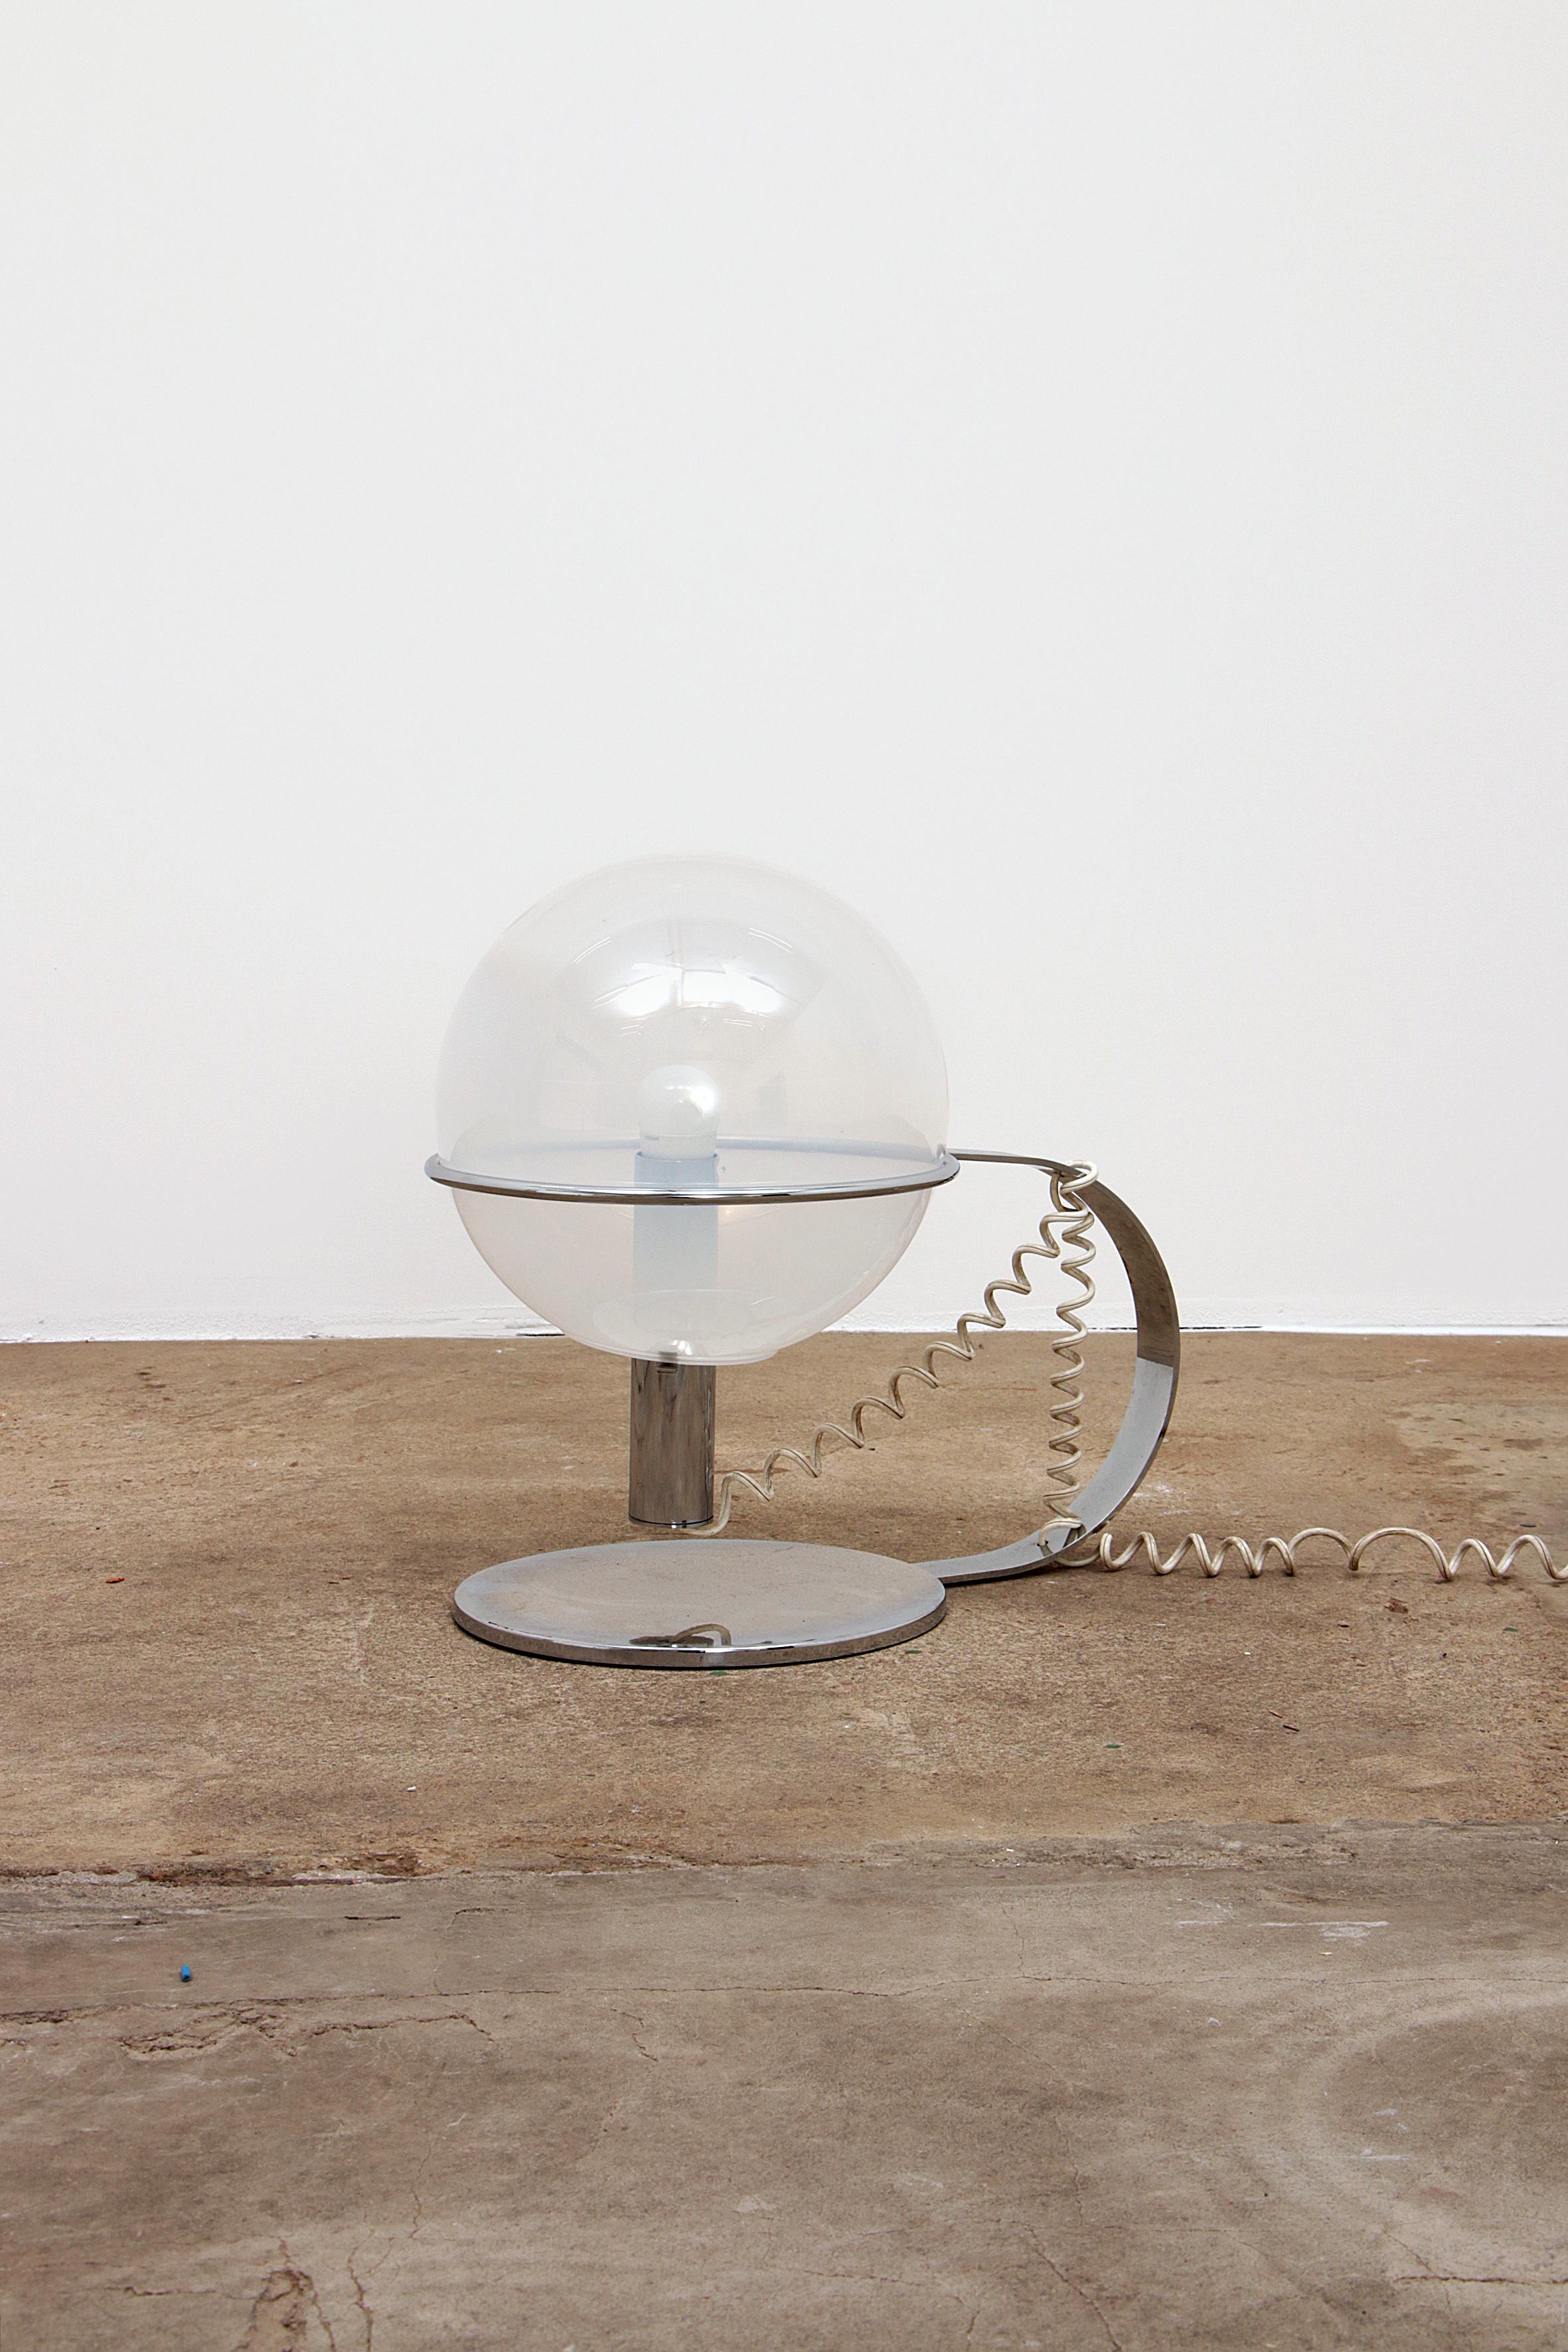 Belle lampe de table en chrome avec un anneau dans lequel s'illumine une sphère de Murano soufflée à la bouche.

Vous pouvez jouer avec cette ampoule et la placer différemment pour obtenir une lumière différente. Un interrupteur se trouve également